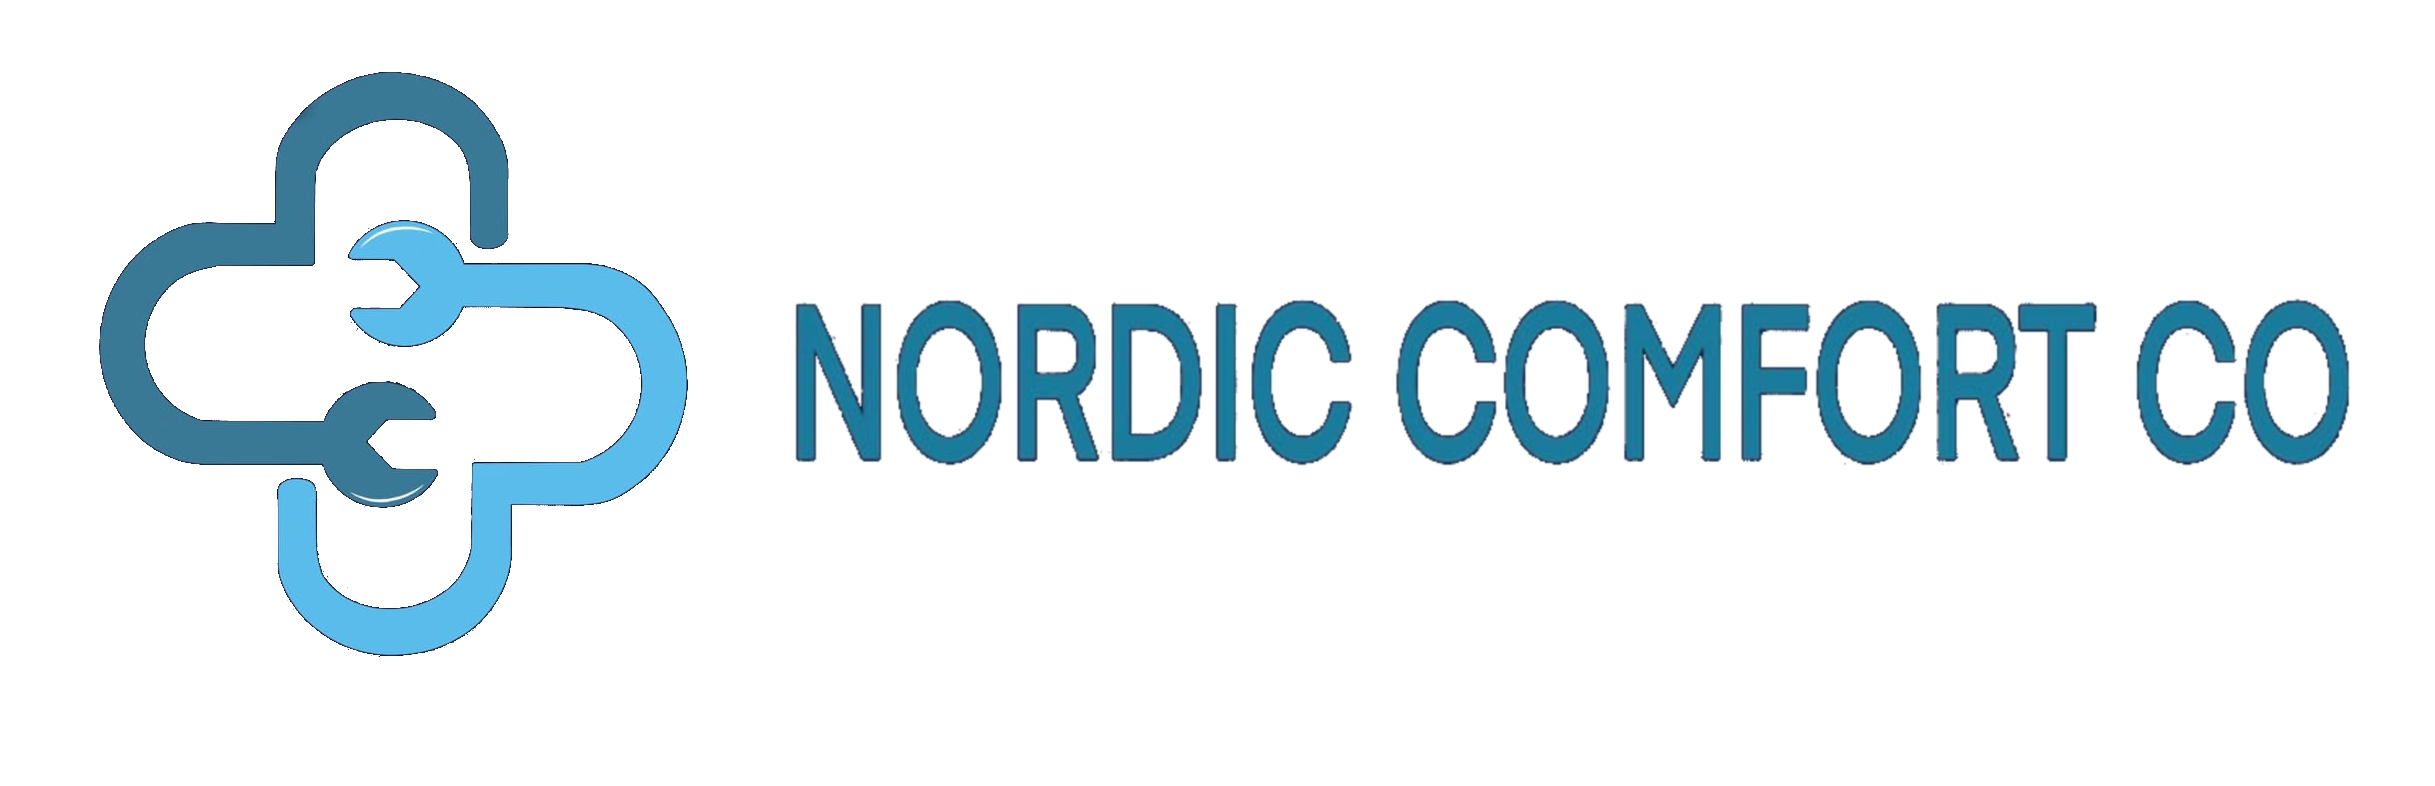 Nordic Comfort